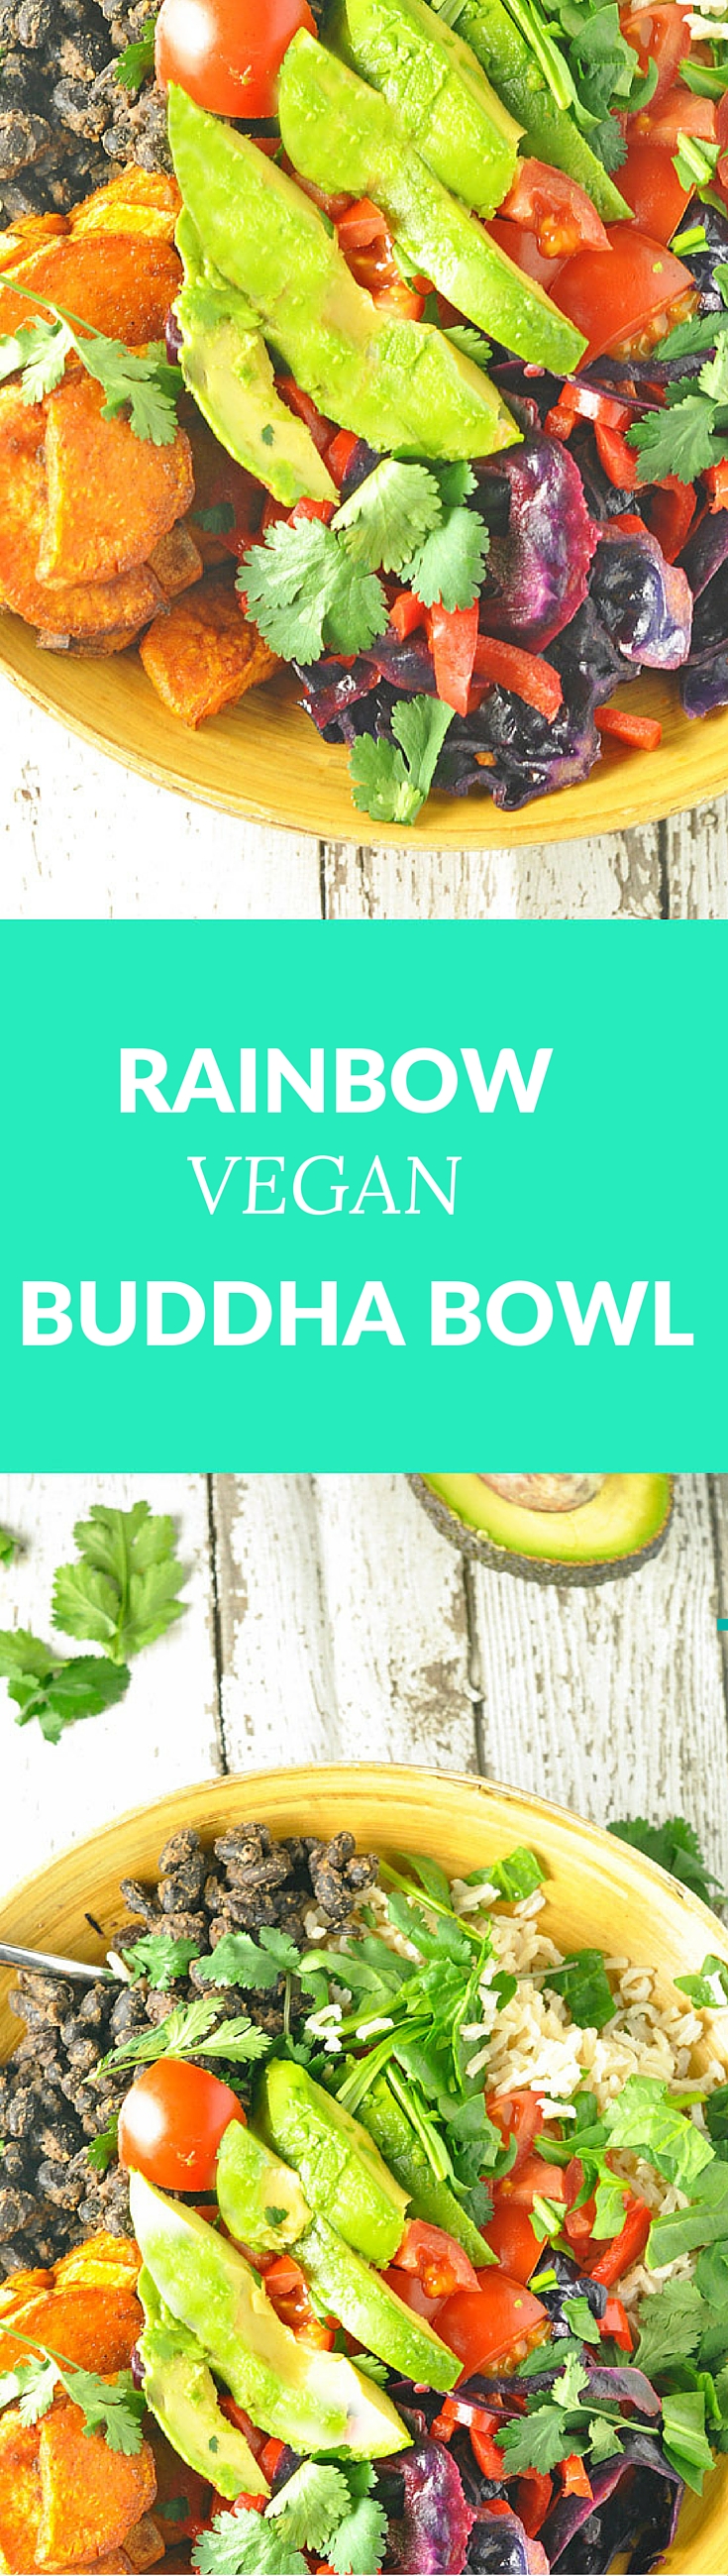 Vegan Buddha Bowl